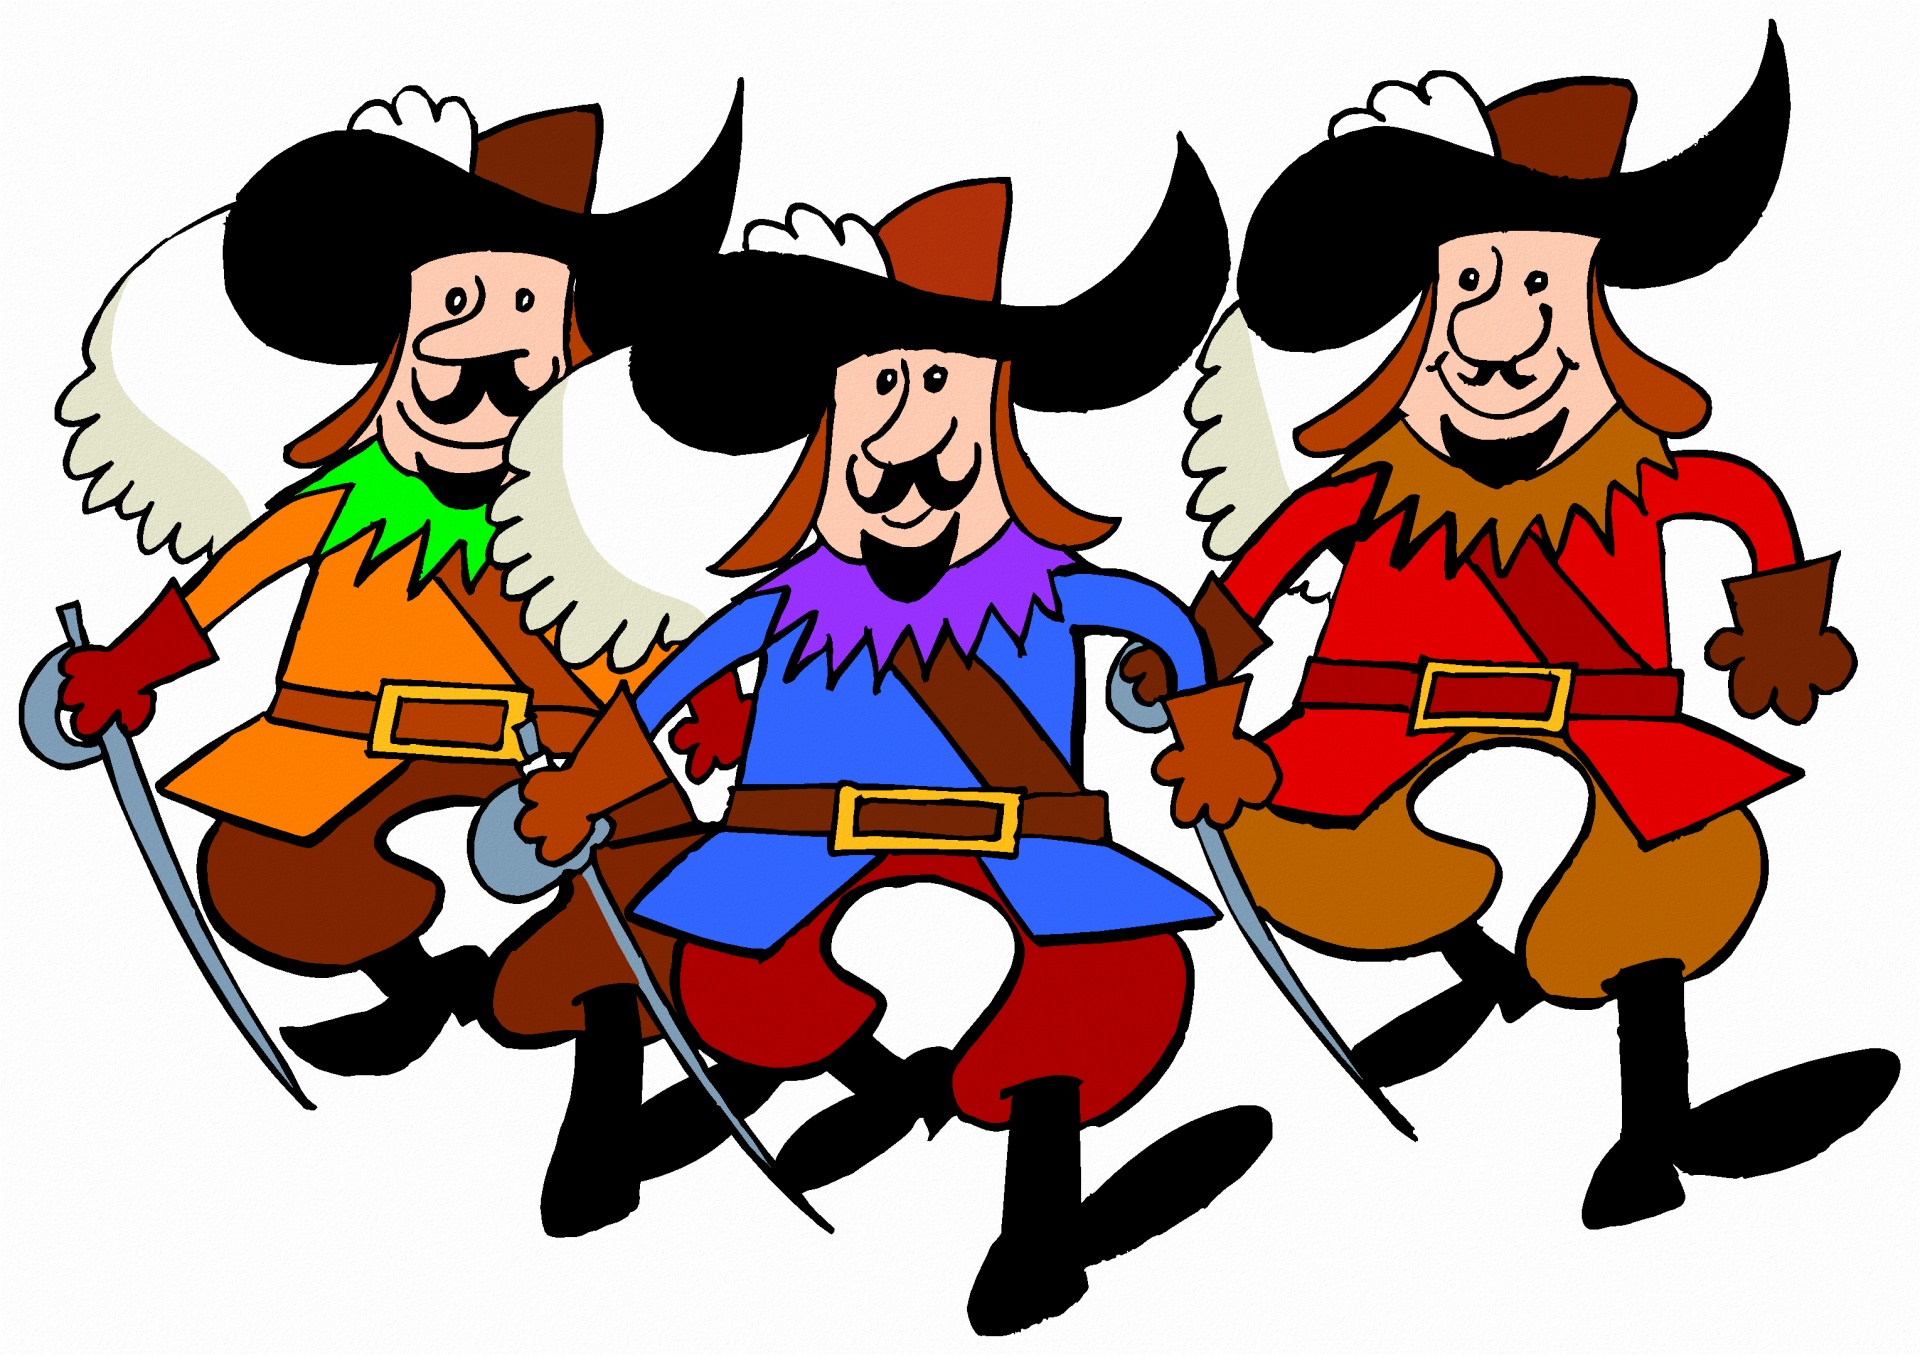 Четверо мушкетеров. "Три мушкетера" (les trois Mousquetaires). Три мушкетера иллюстрации. Три мушкетера рисунок. Мушкетеры мультяшные.